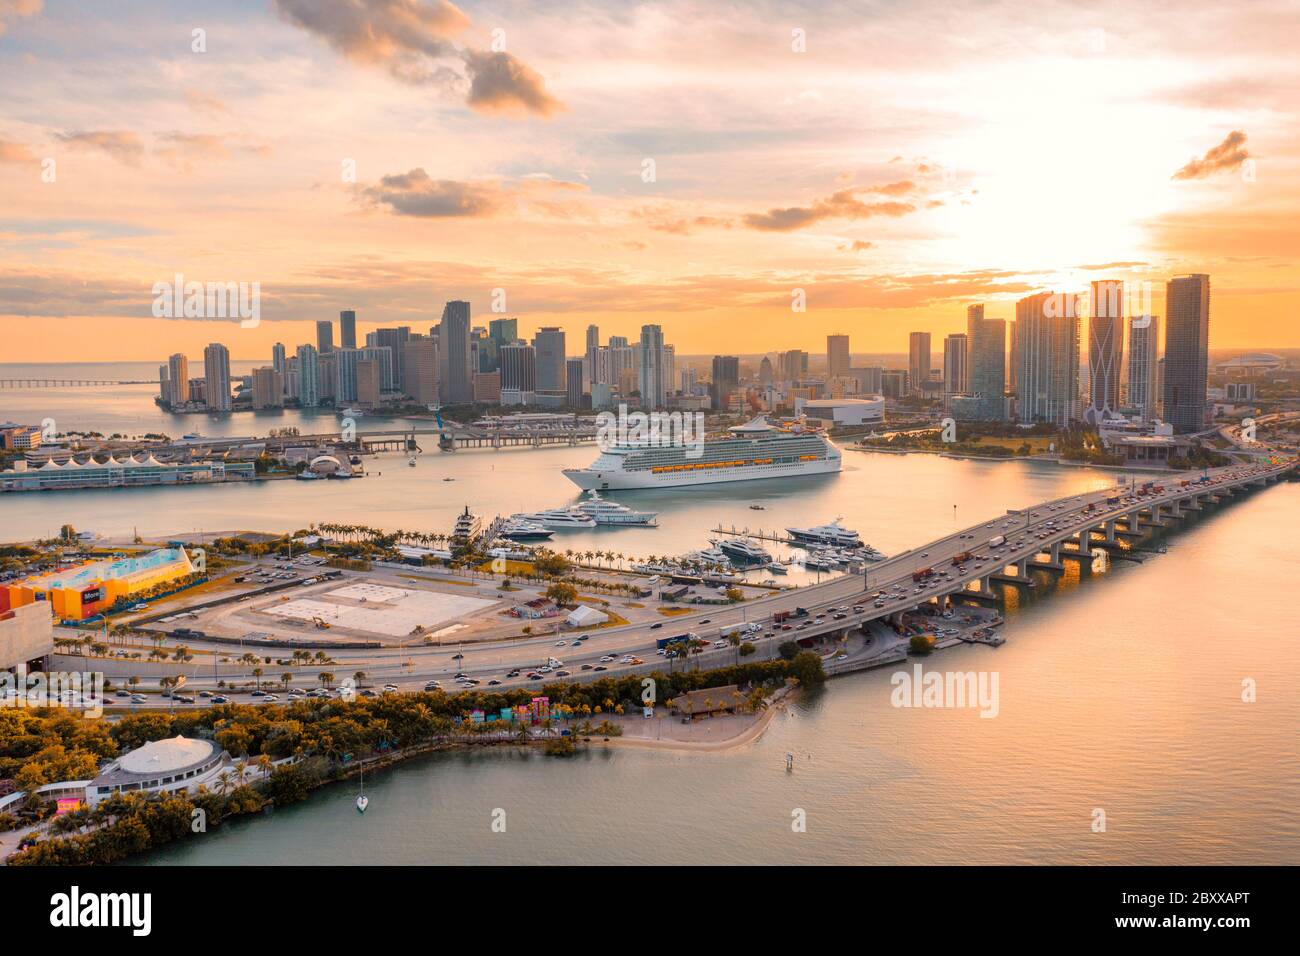 Downtown Miami - Sunset Stock Photo